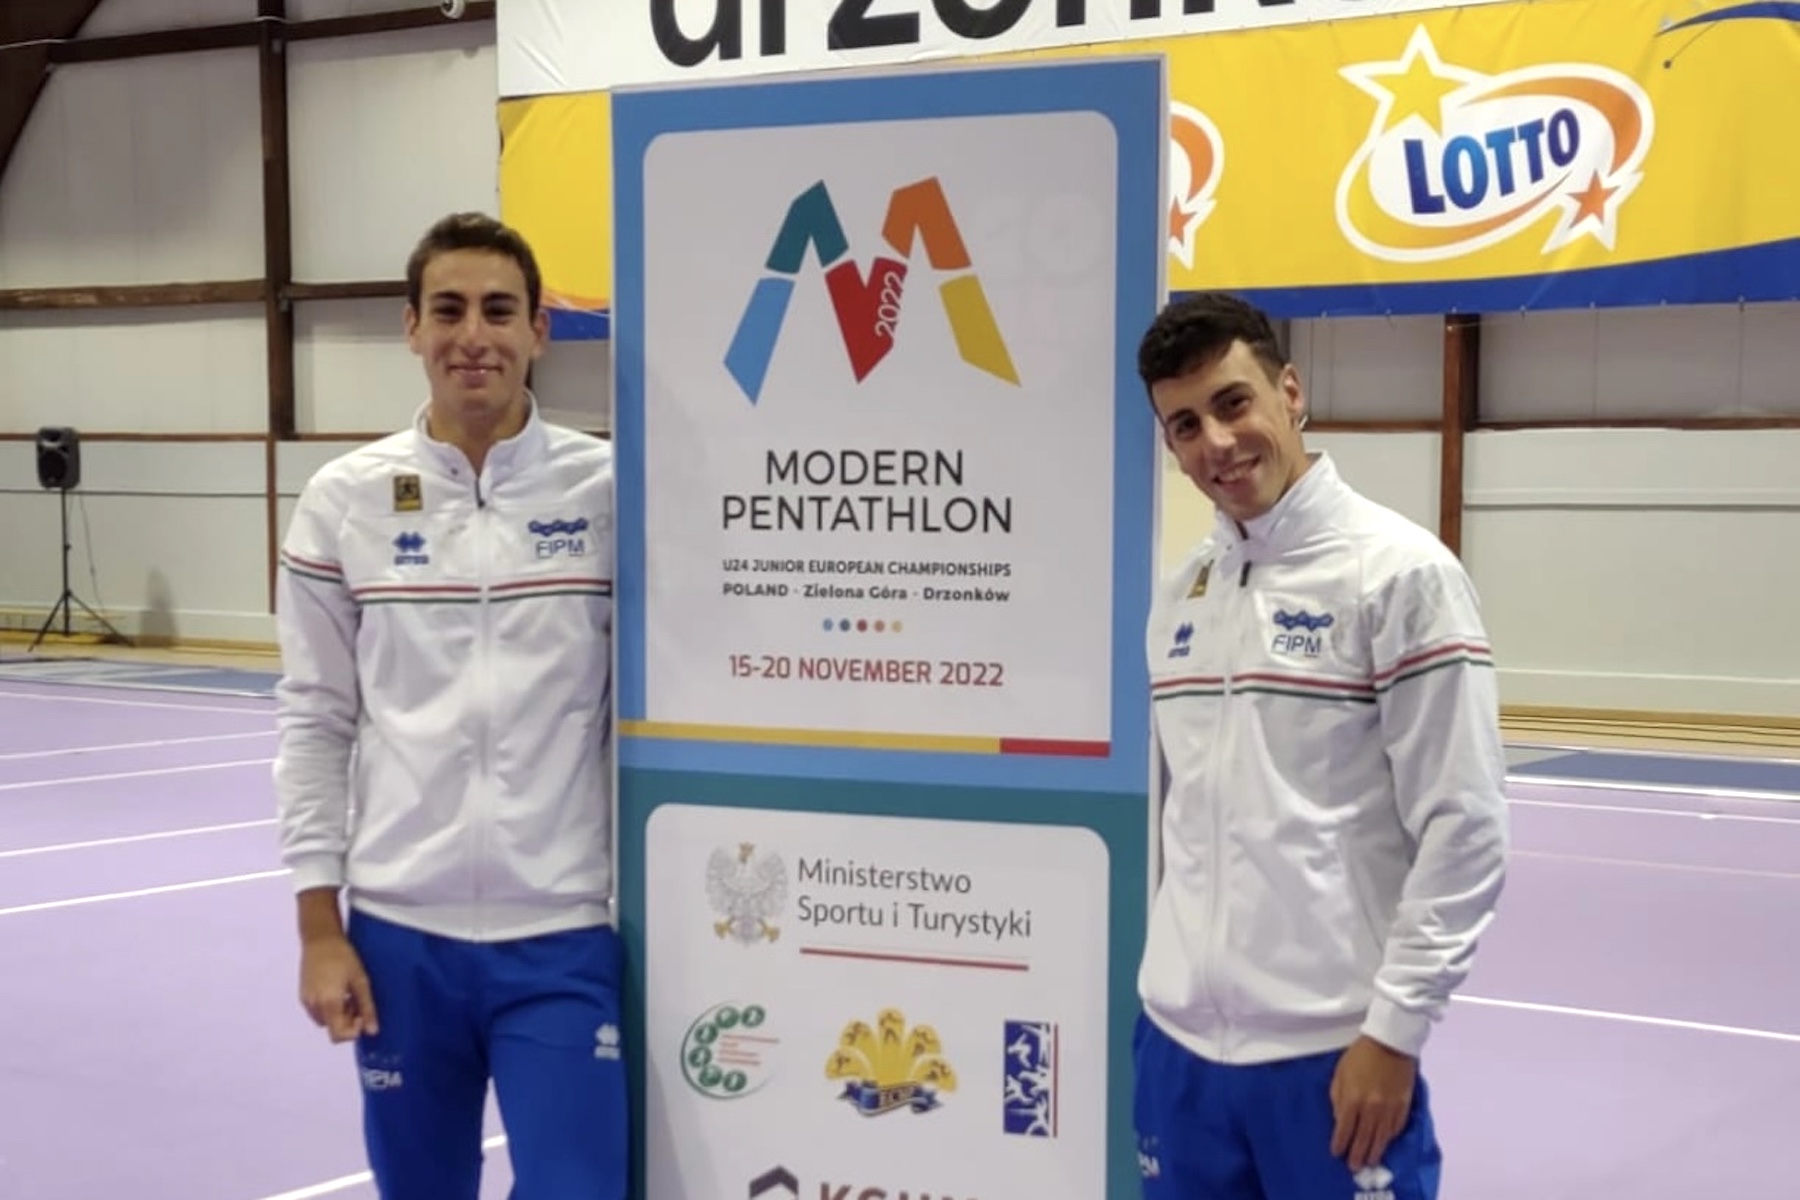 Pentathlon Moderno, Europei U24: Stefano Frezza e Federico Alessandro conquistano la finale